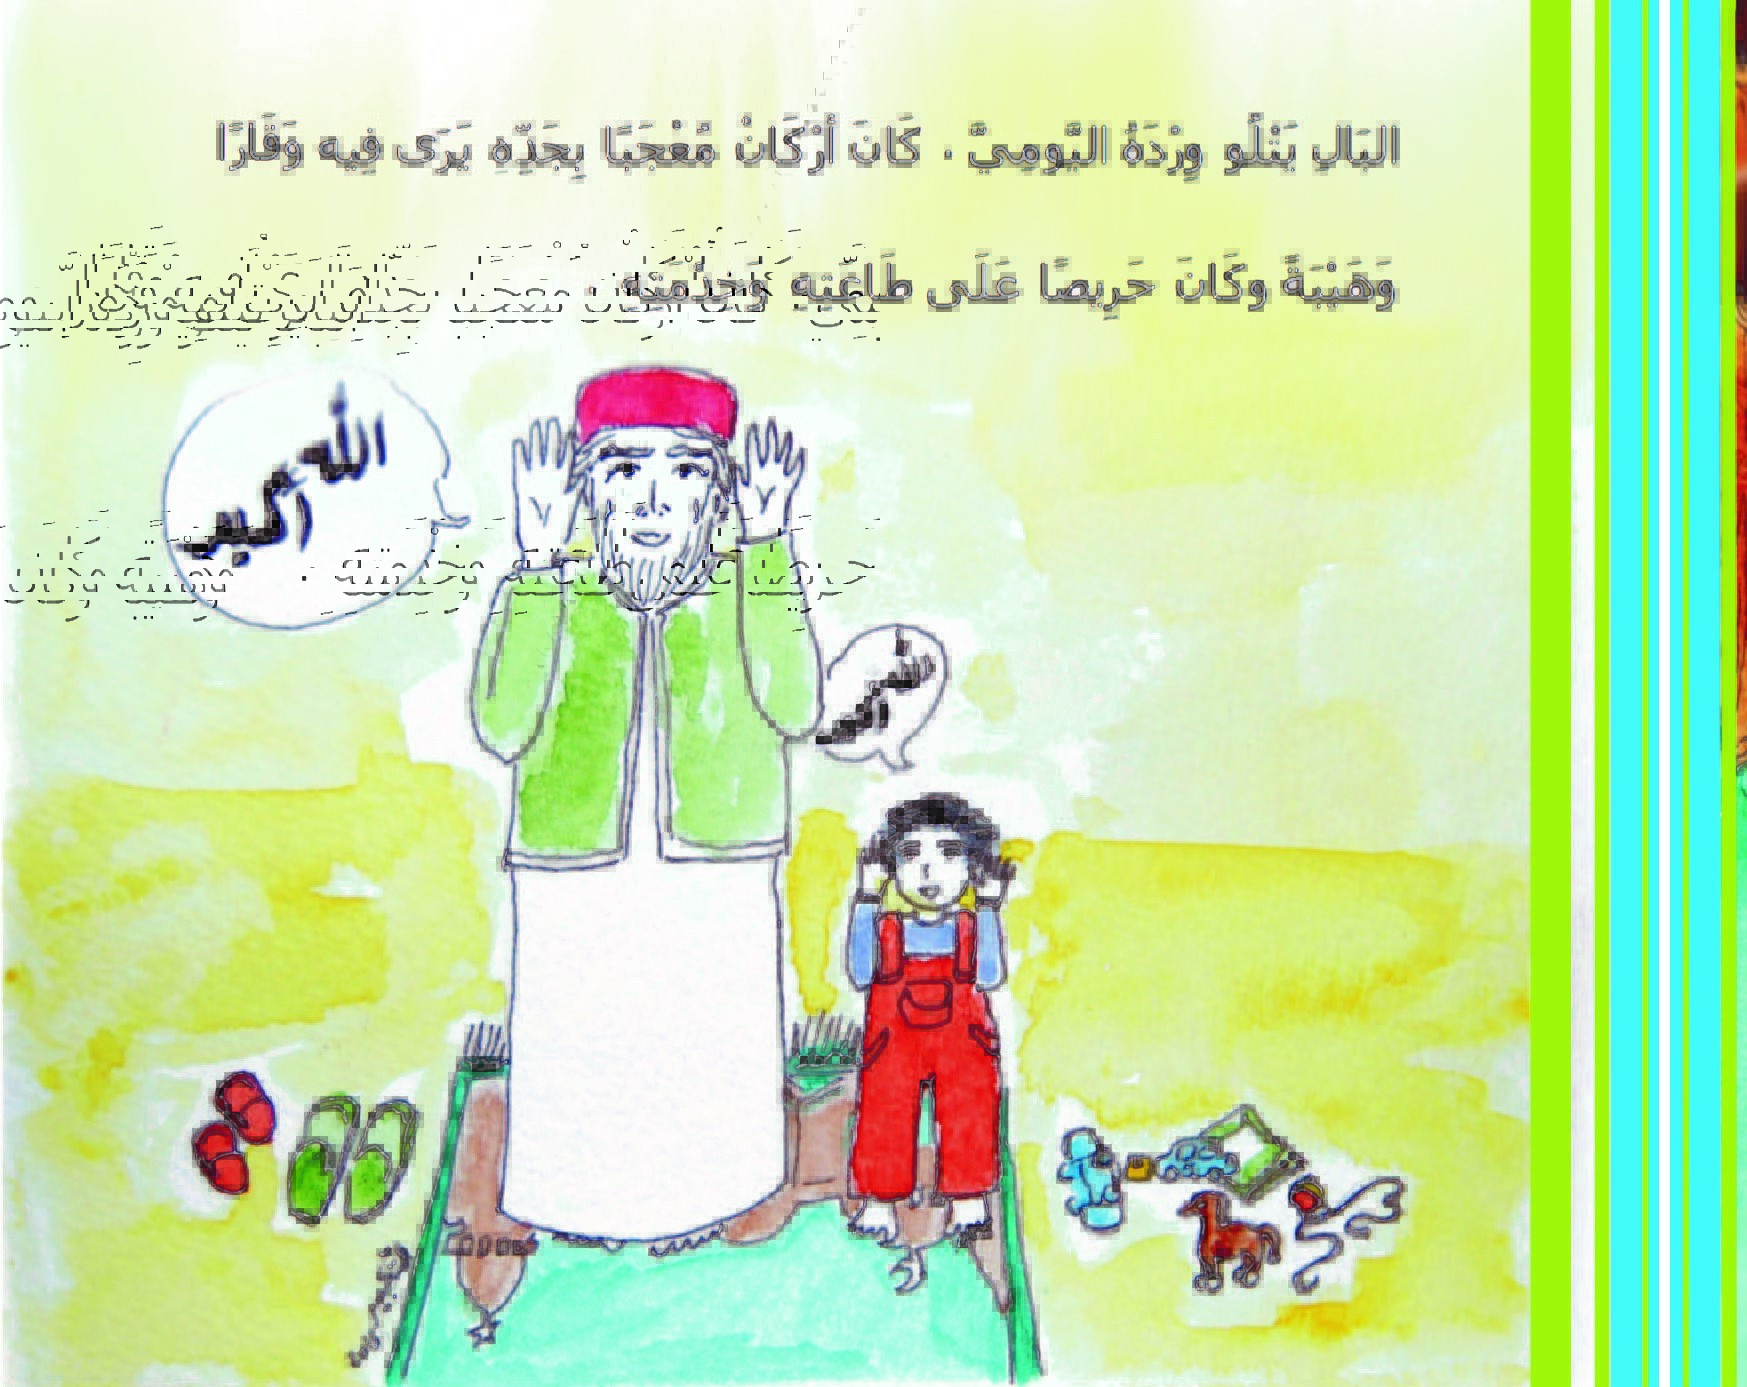 من قصص الأطفال المصورة - حكاية: في بيت جدّ أركان - من المجموعة القصصية: سلسلة زهرة الثالوث - رسوم وتصميم الكاتبة: كريمة الغربي - موقع (كيدزوون | Kidzooon)